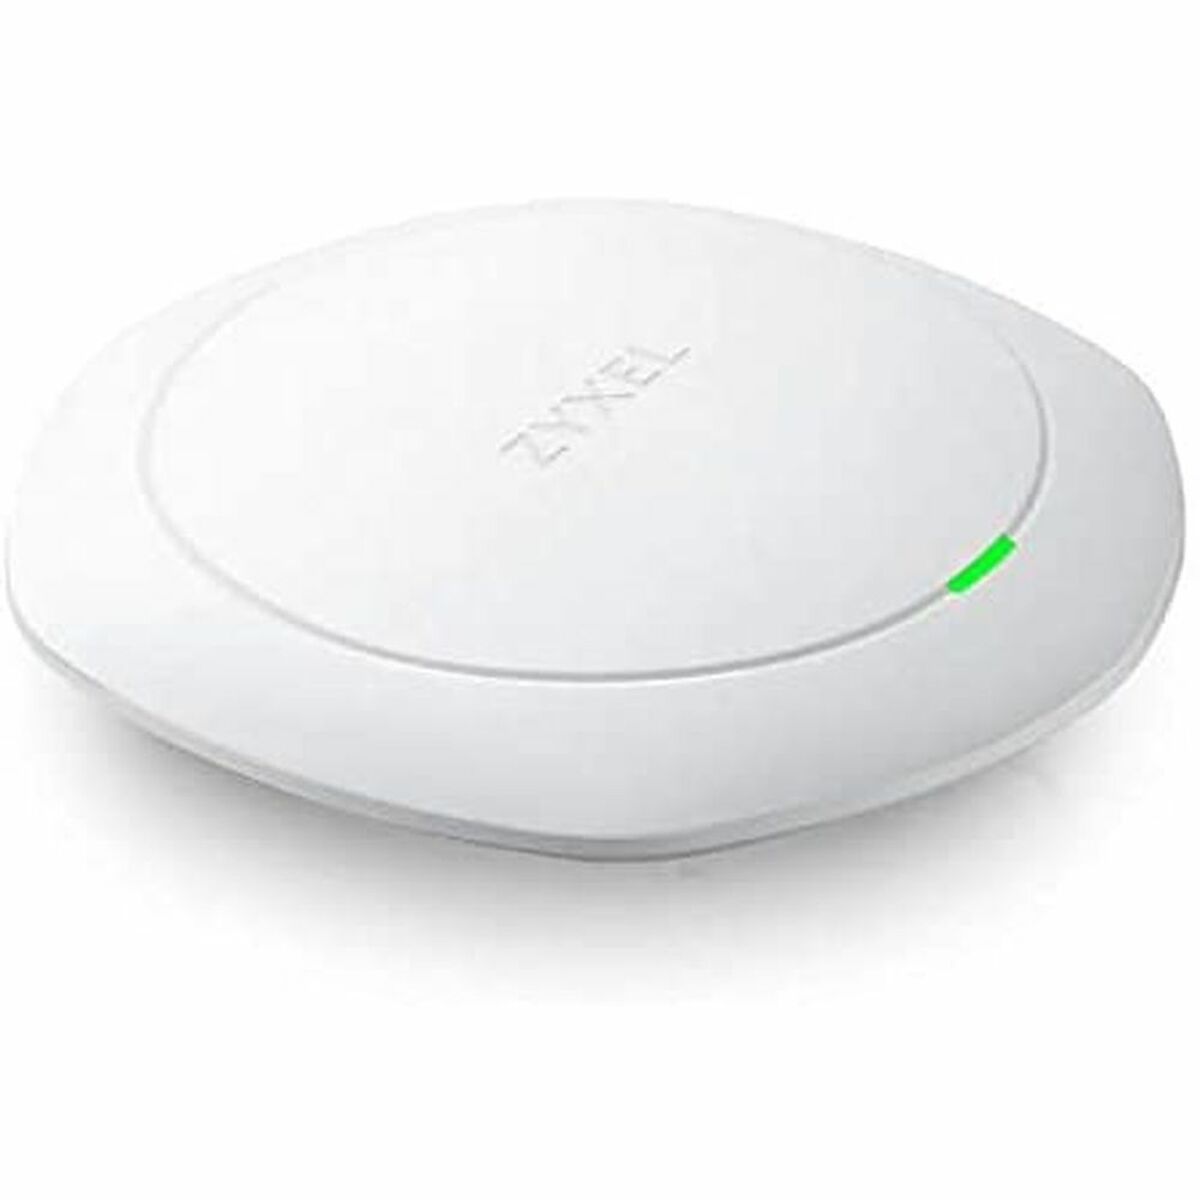 Wi-Fi антенна ZyXEL WAC6303D-S-EU0101F